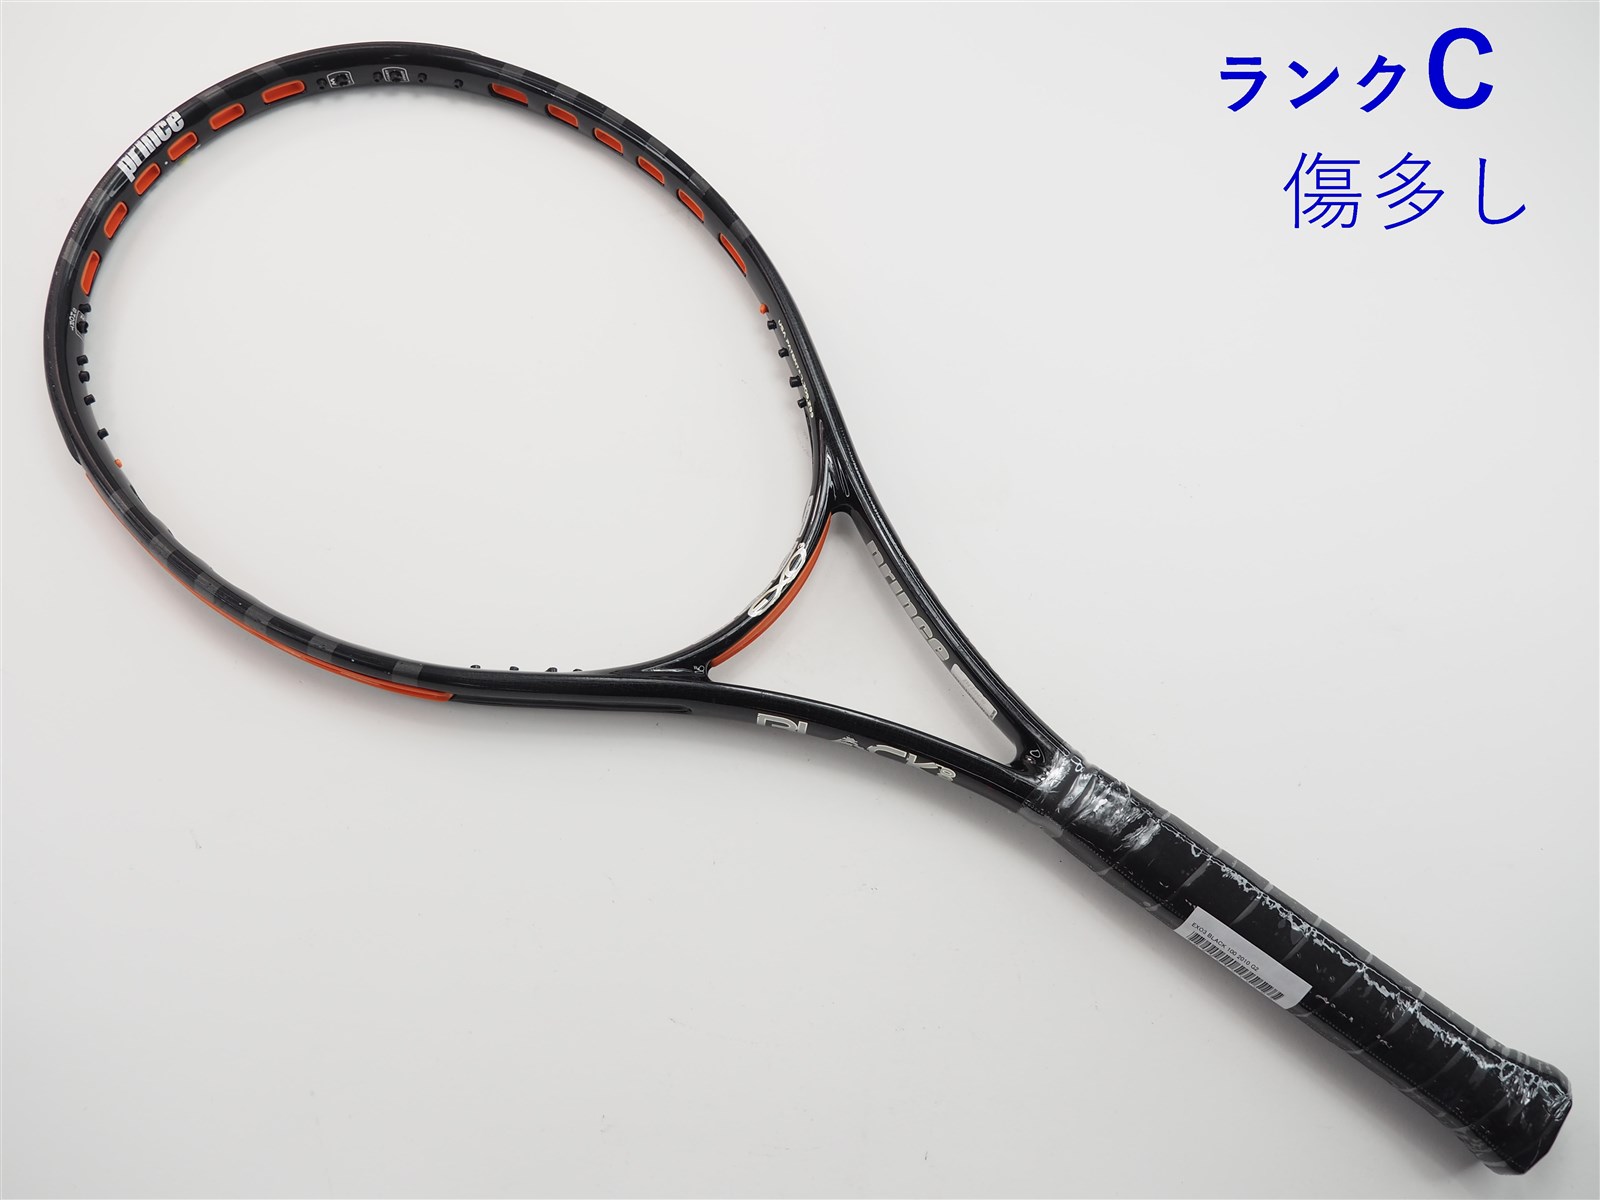 テニスラケット プリンス エックス 100 ツアー 2019年モデル【一部グロメット割れ有り】 (G3)PRINCE X 100 TOUR 2019